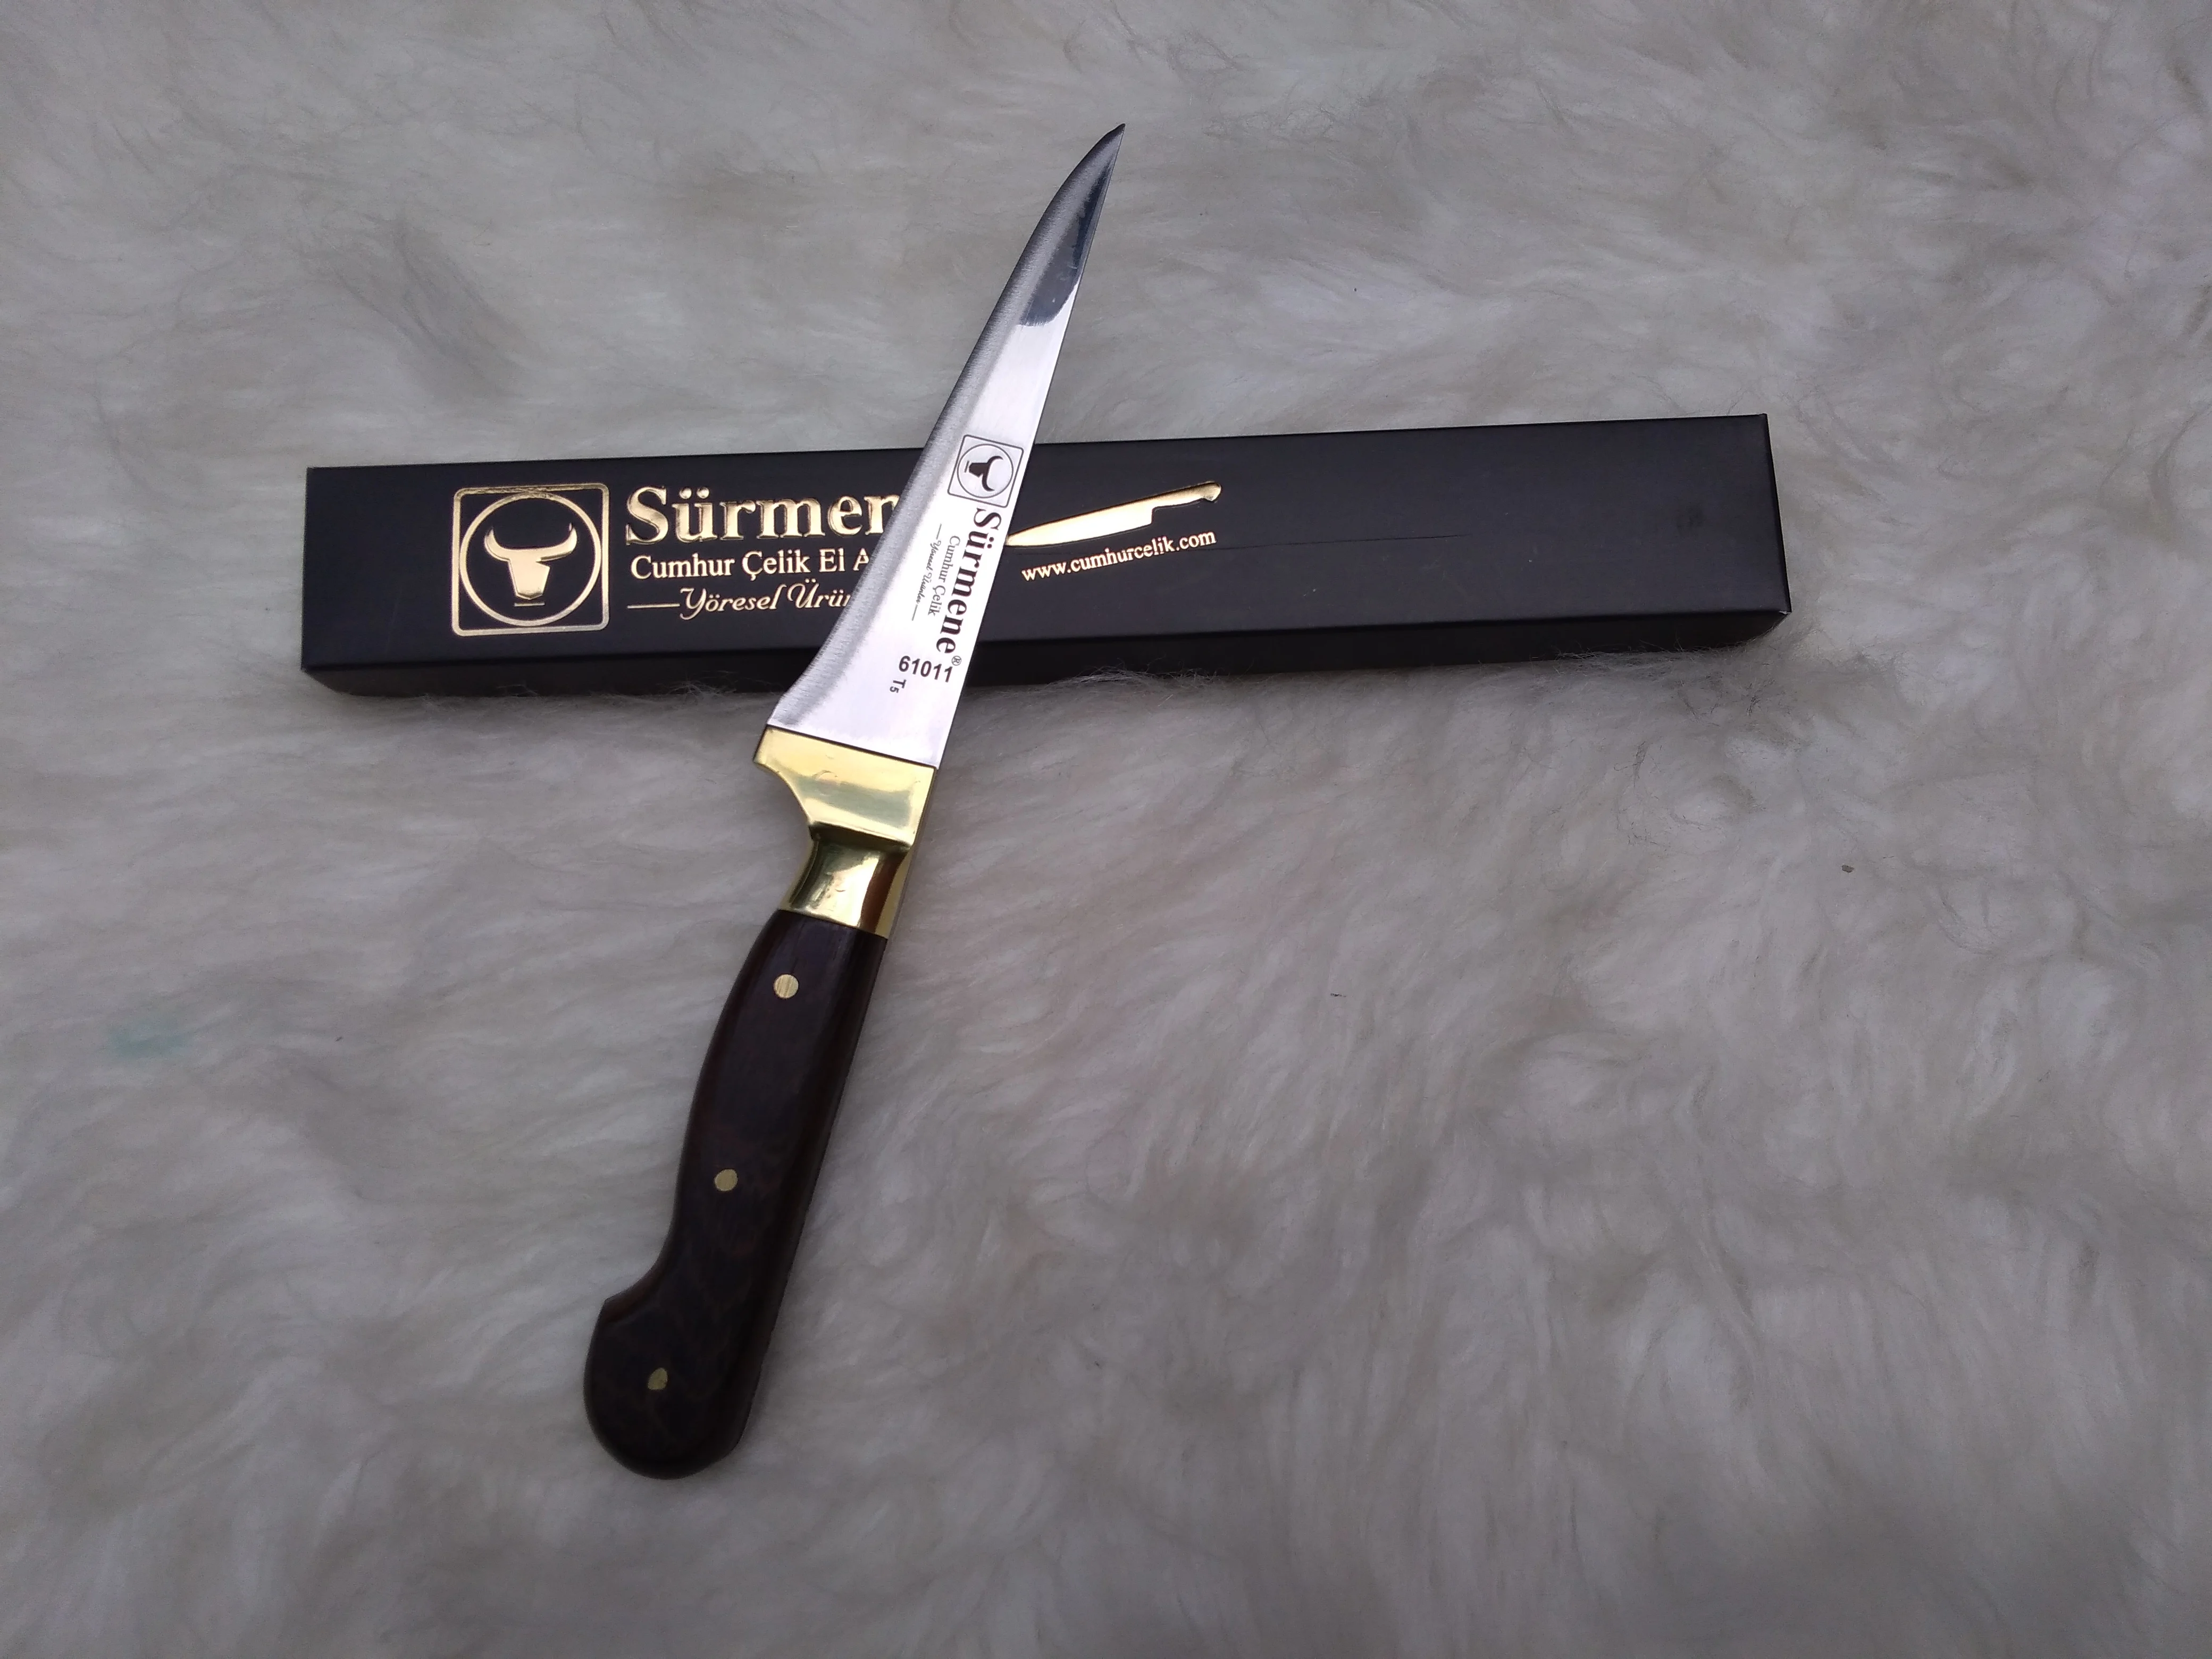 

Surmene Cumhur Çelik Bıçak Venge Ağaç Saplı El Yapımı Kesici Et ve Sebze Kesme Bıçağı Sarı Perçinli Premium Profesyonel